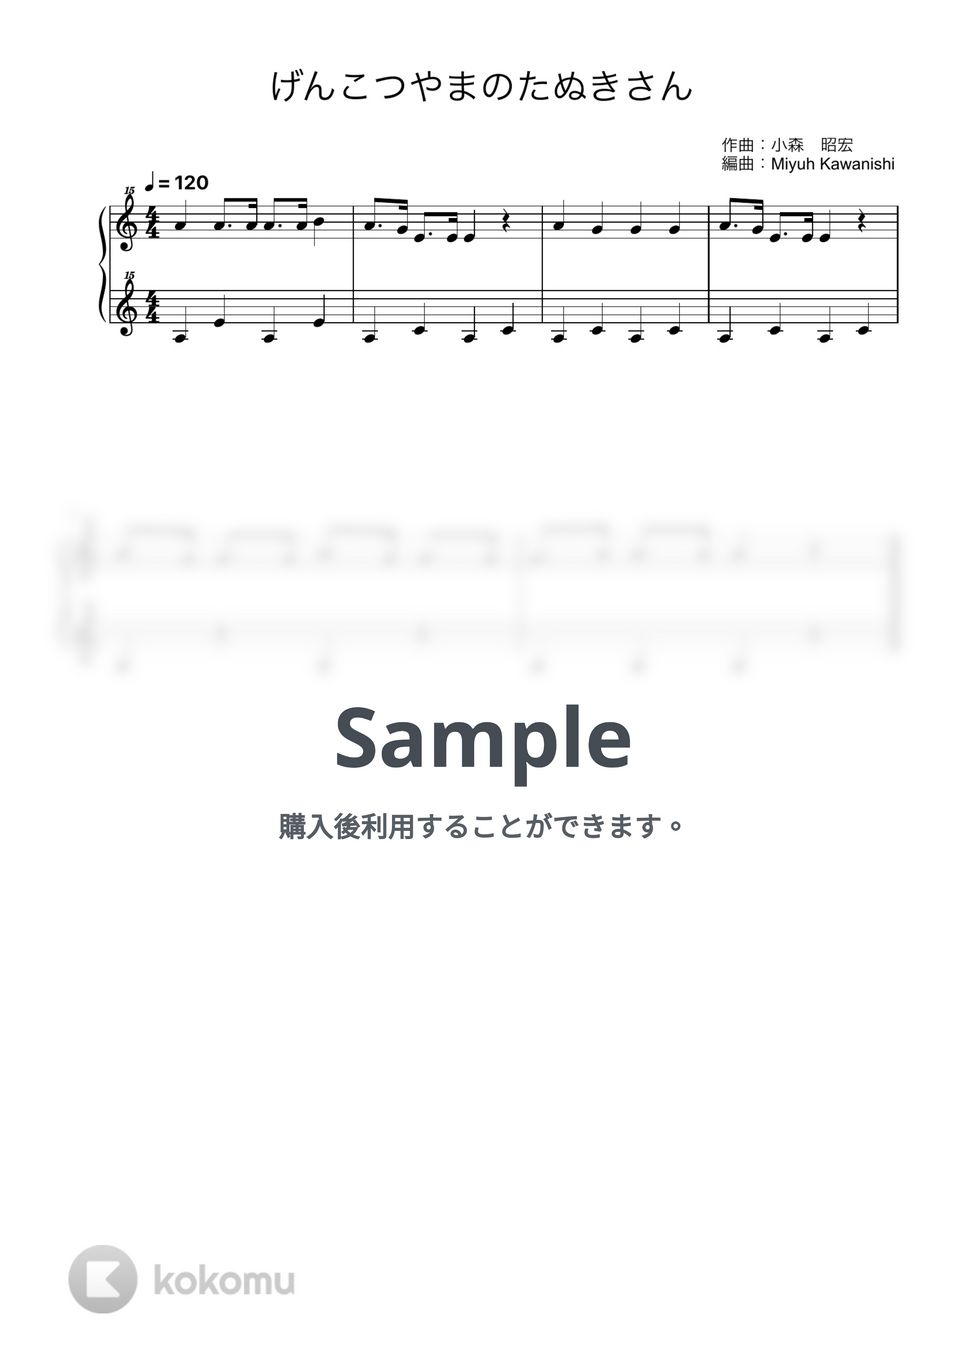 げんこつやまのたぬきさん (トイピアノ / 25鍵盤 / 童謡) by 川西 三裕